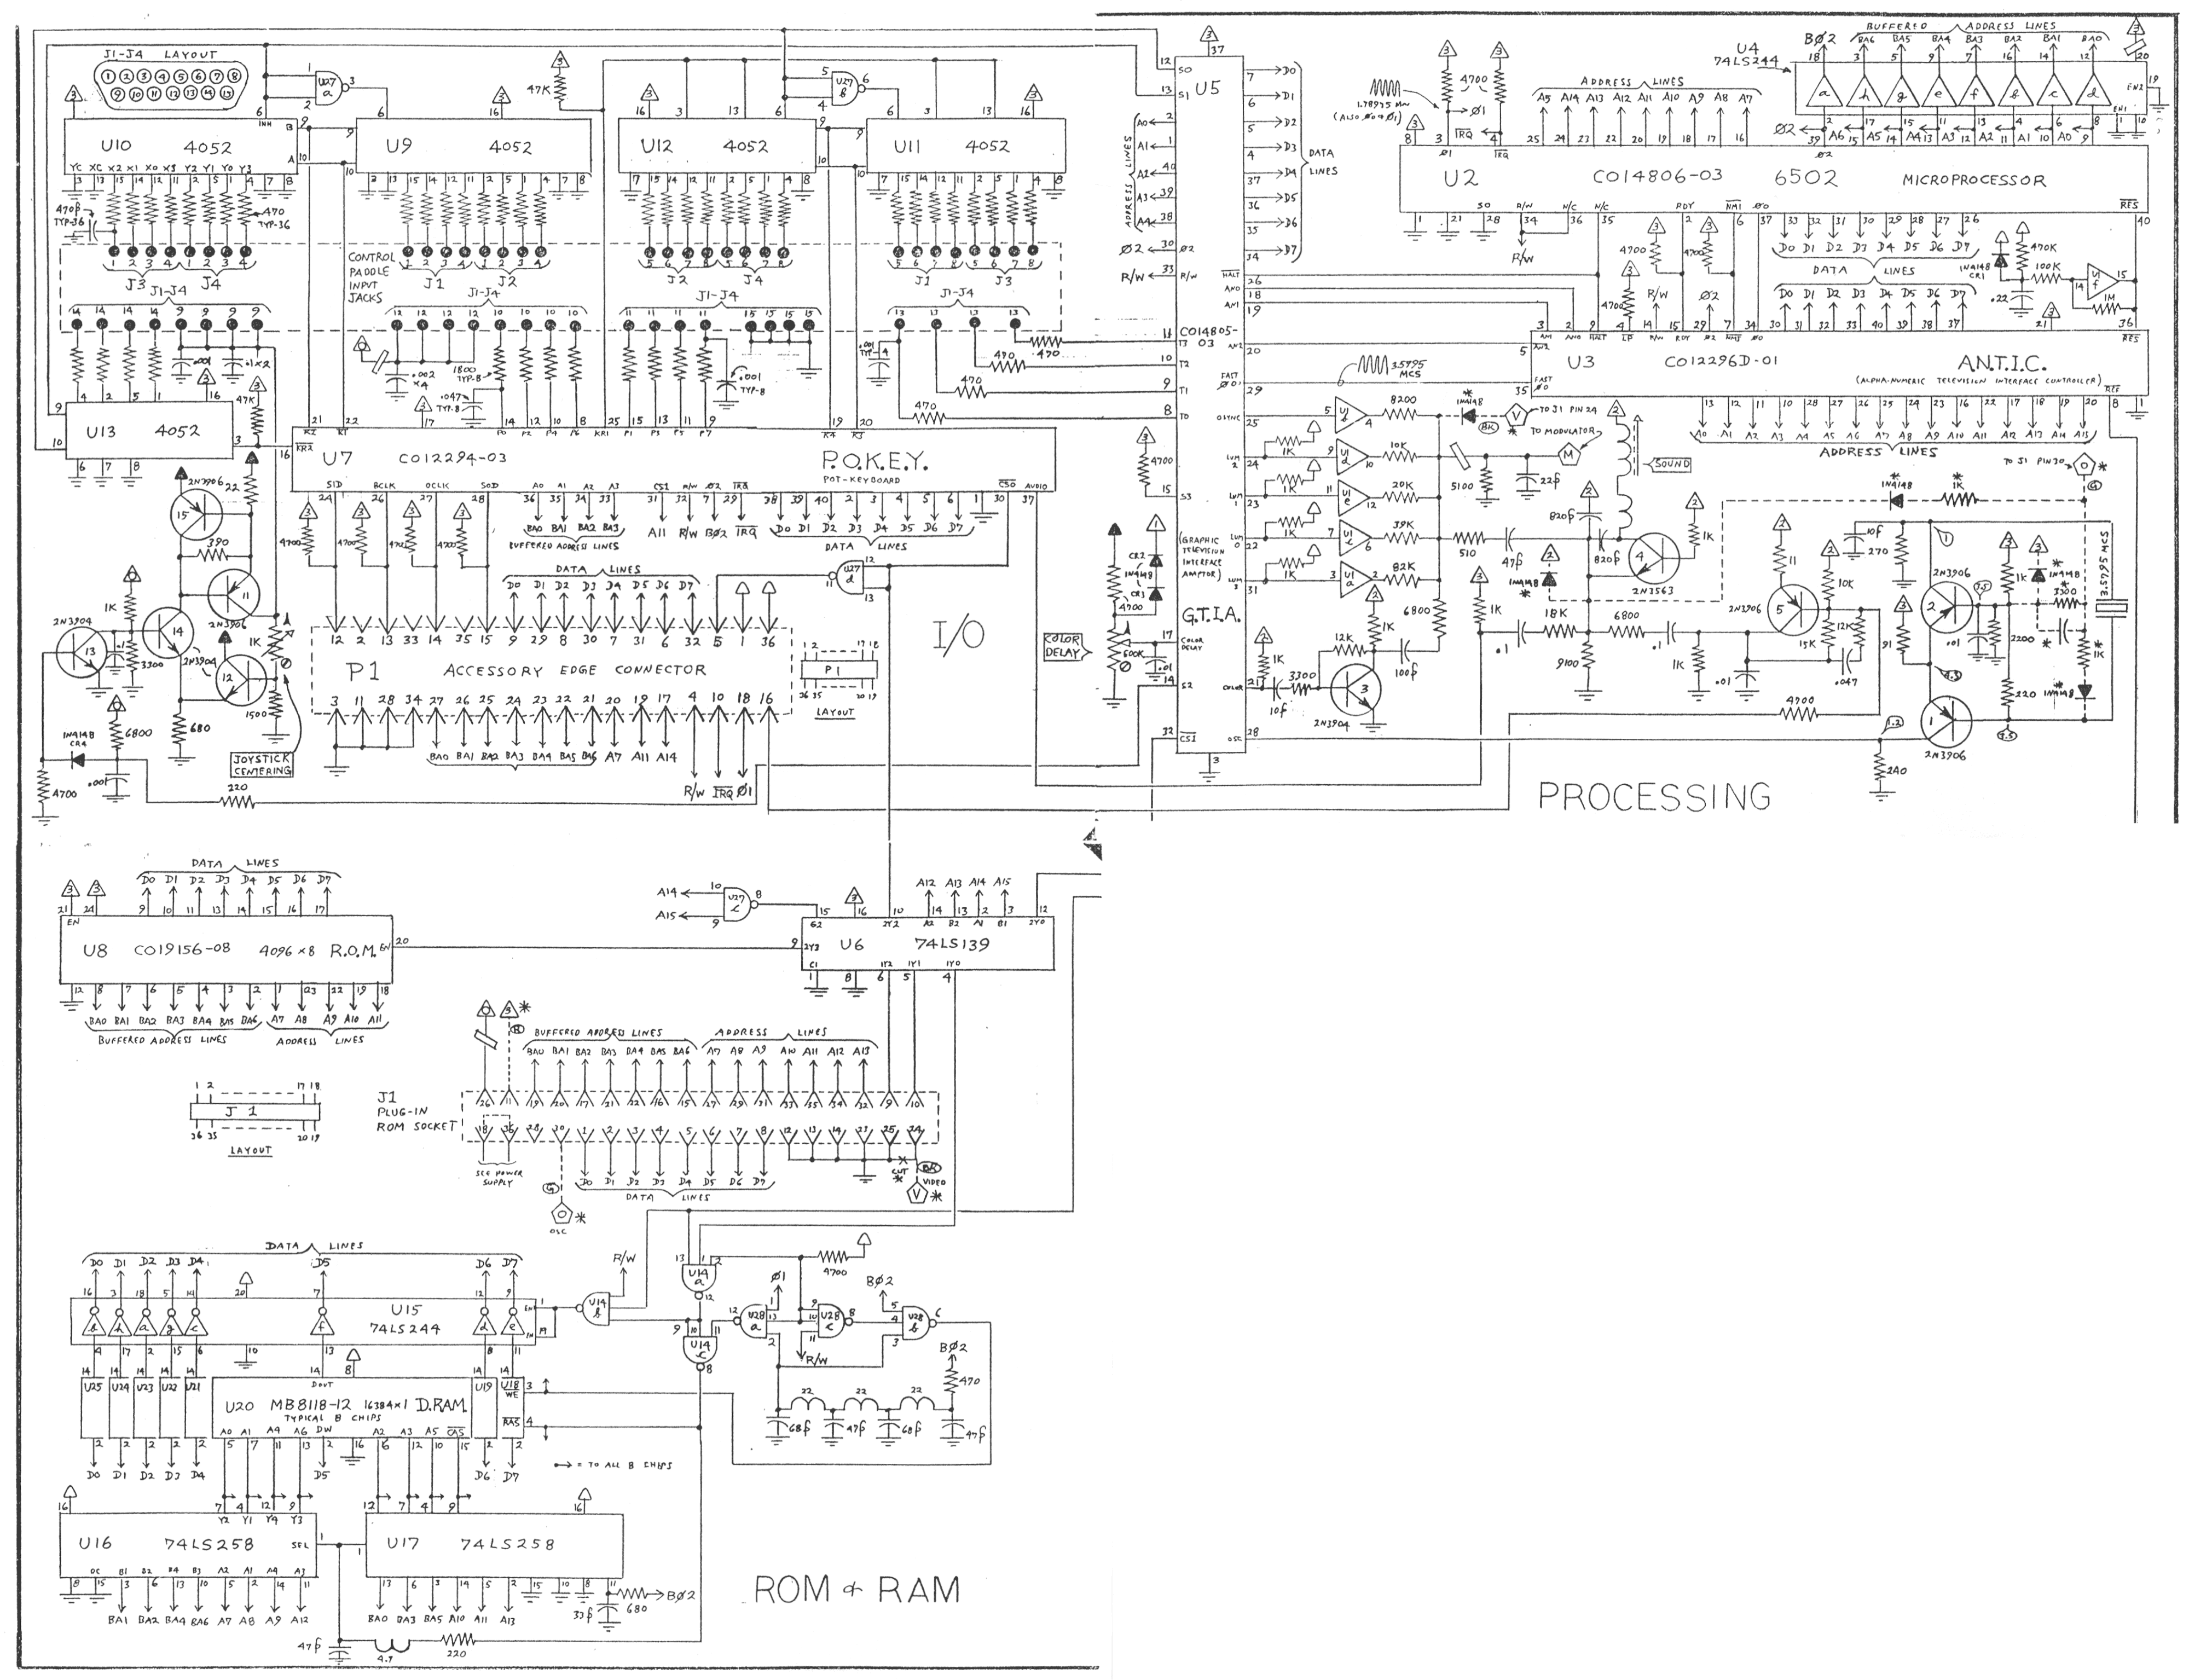 Atari 5200 Board Schematic